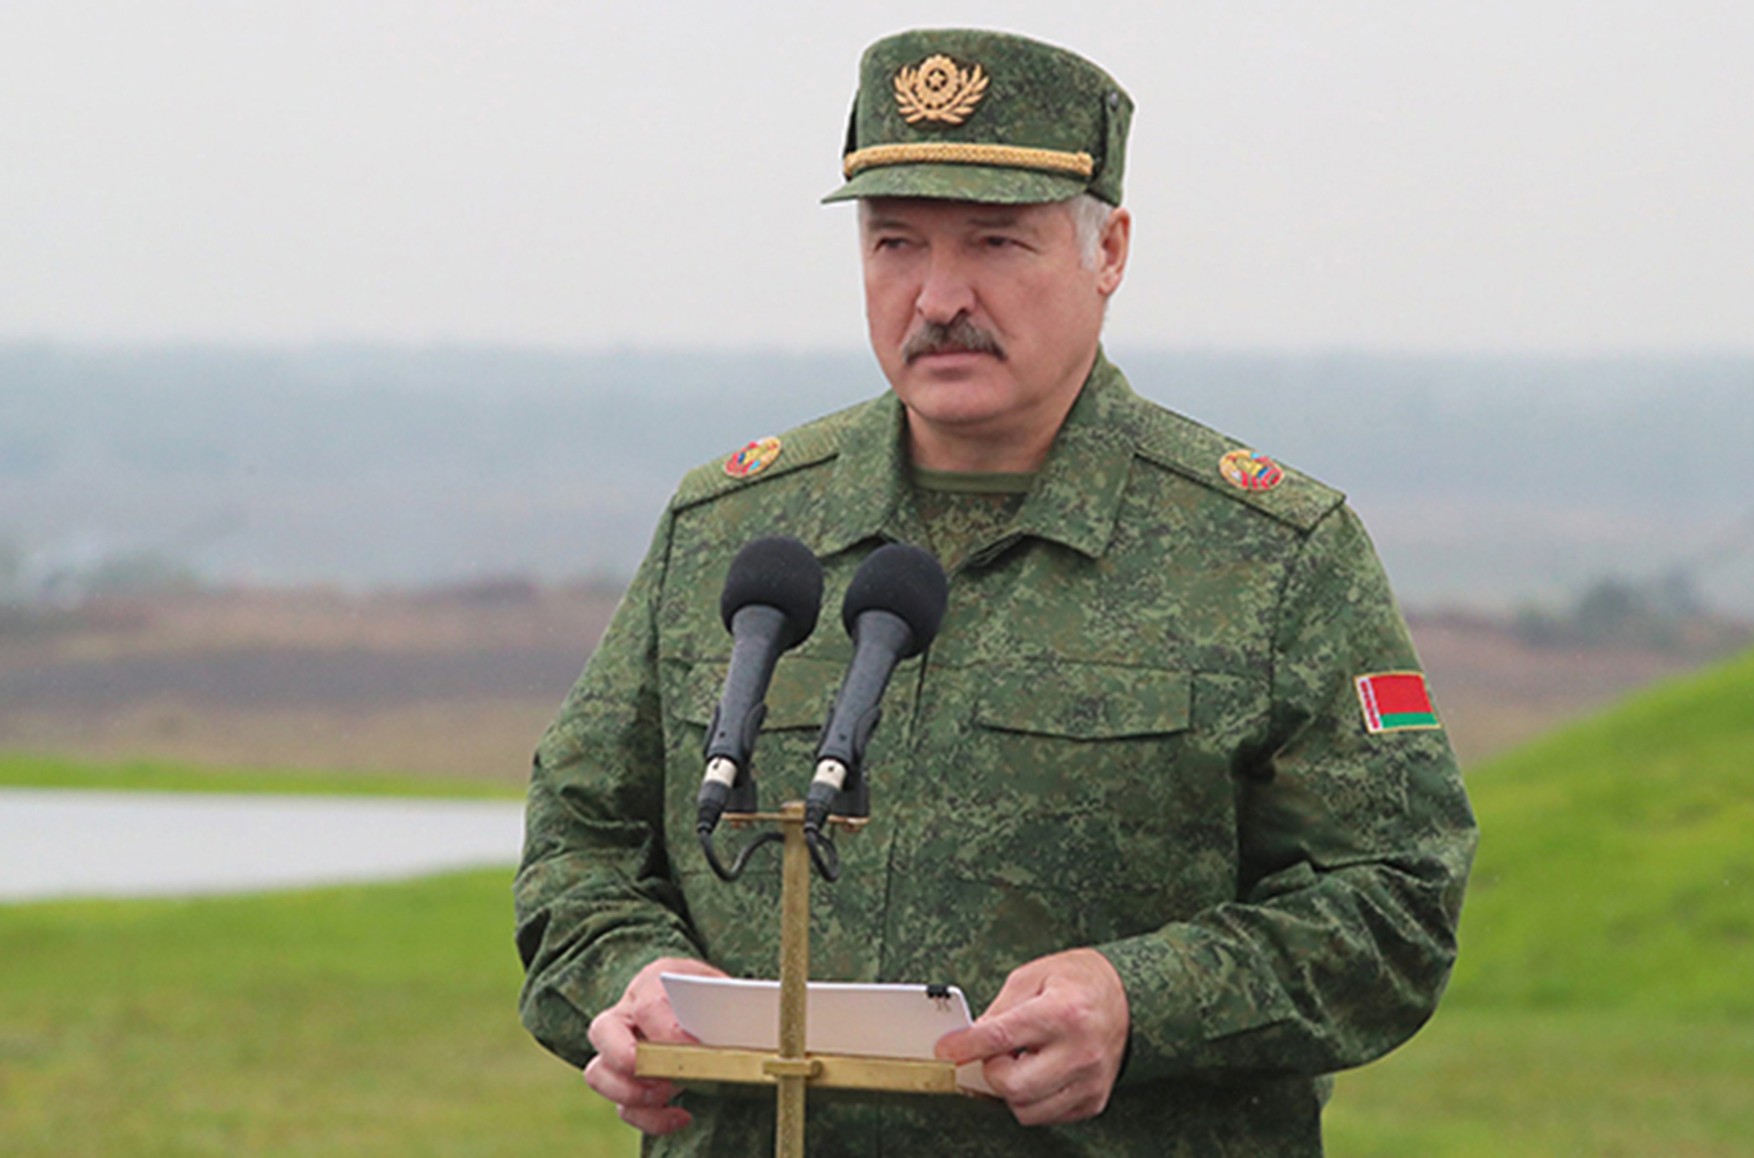 Лукашенко приказал немедленно создать оперативное командование Вооруженных сил Беларуси на украинском направлении